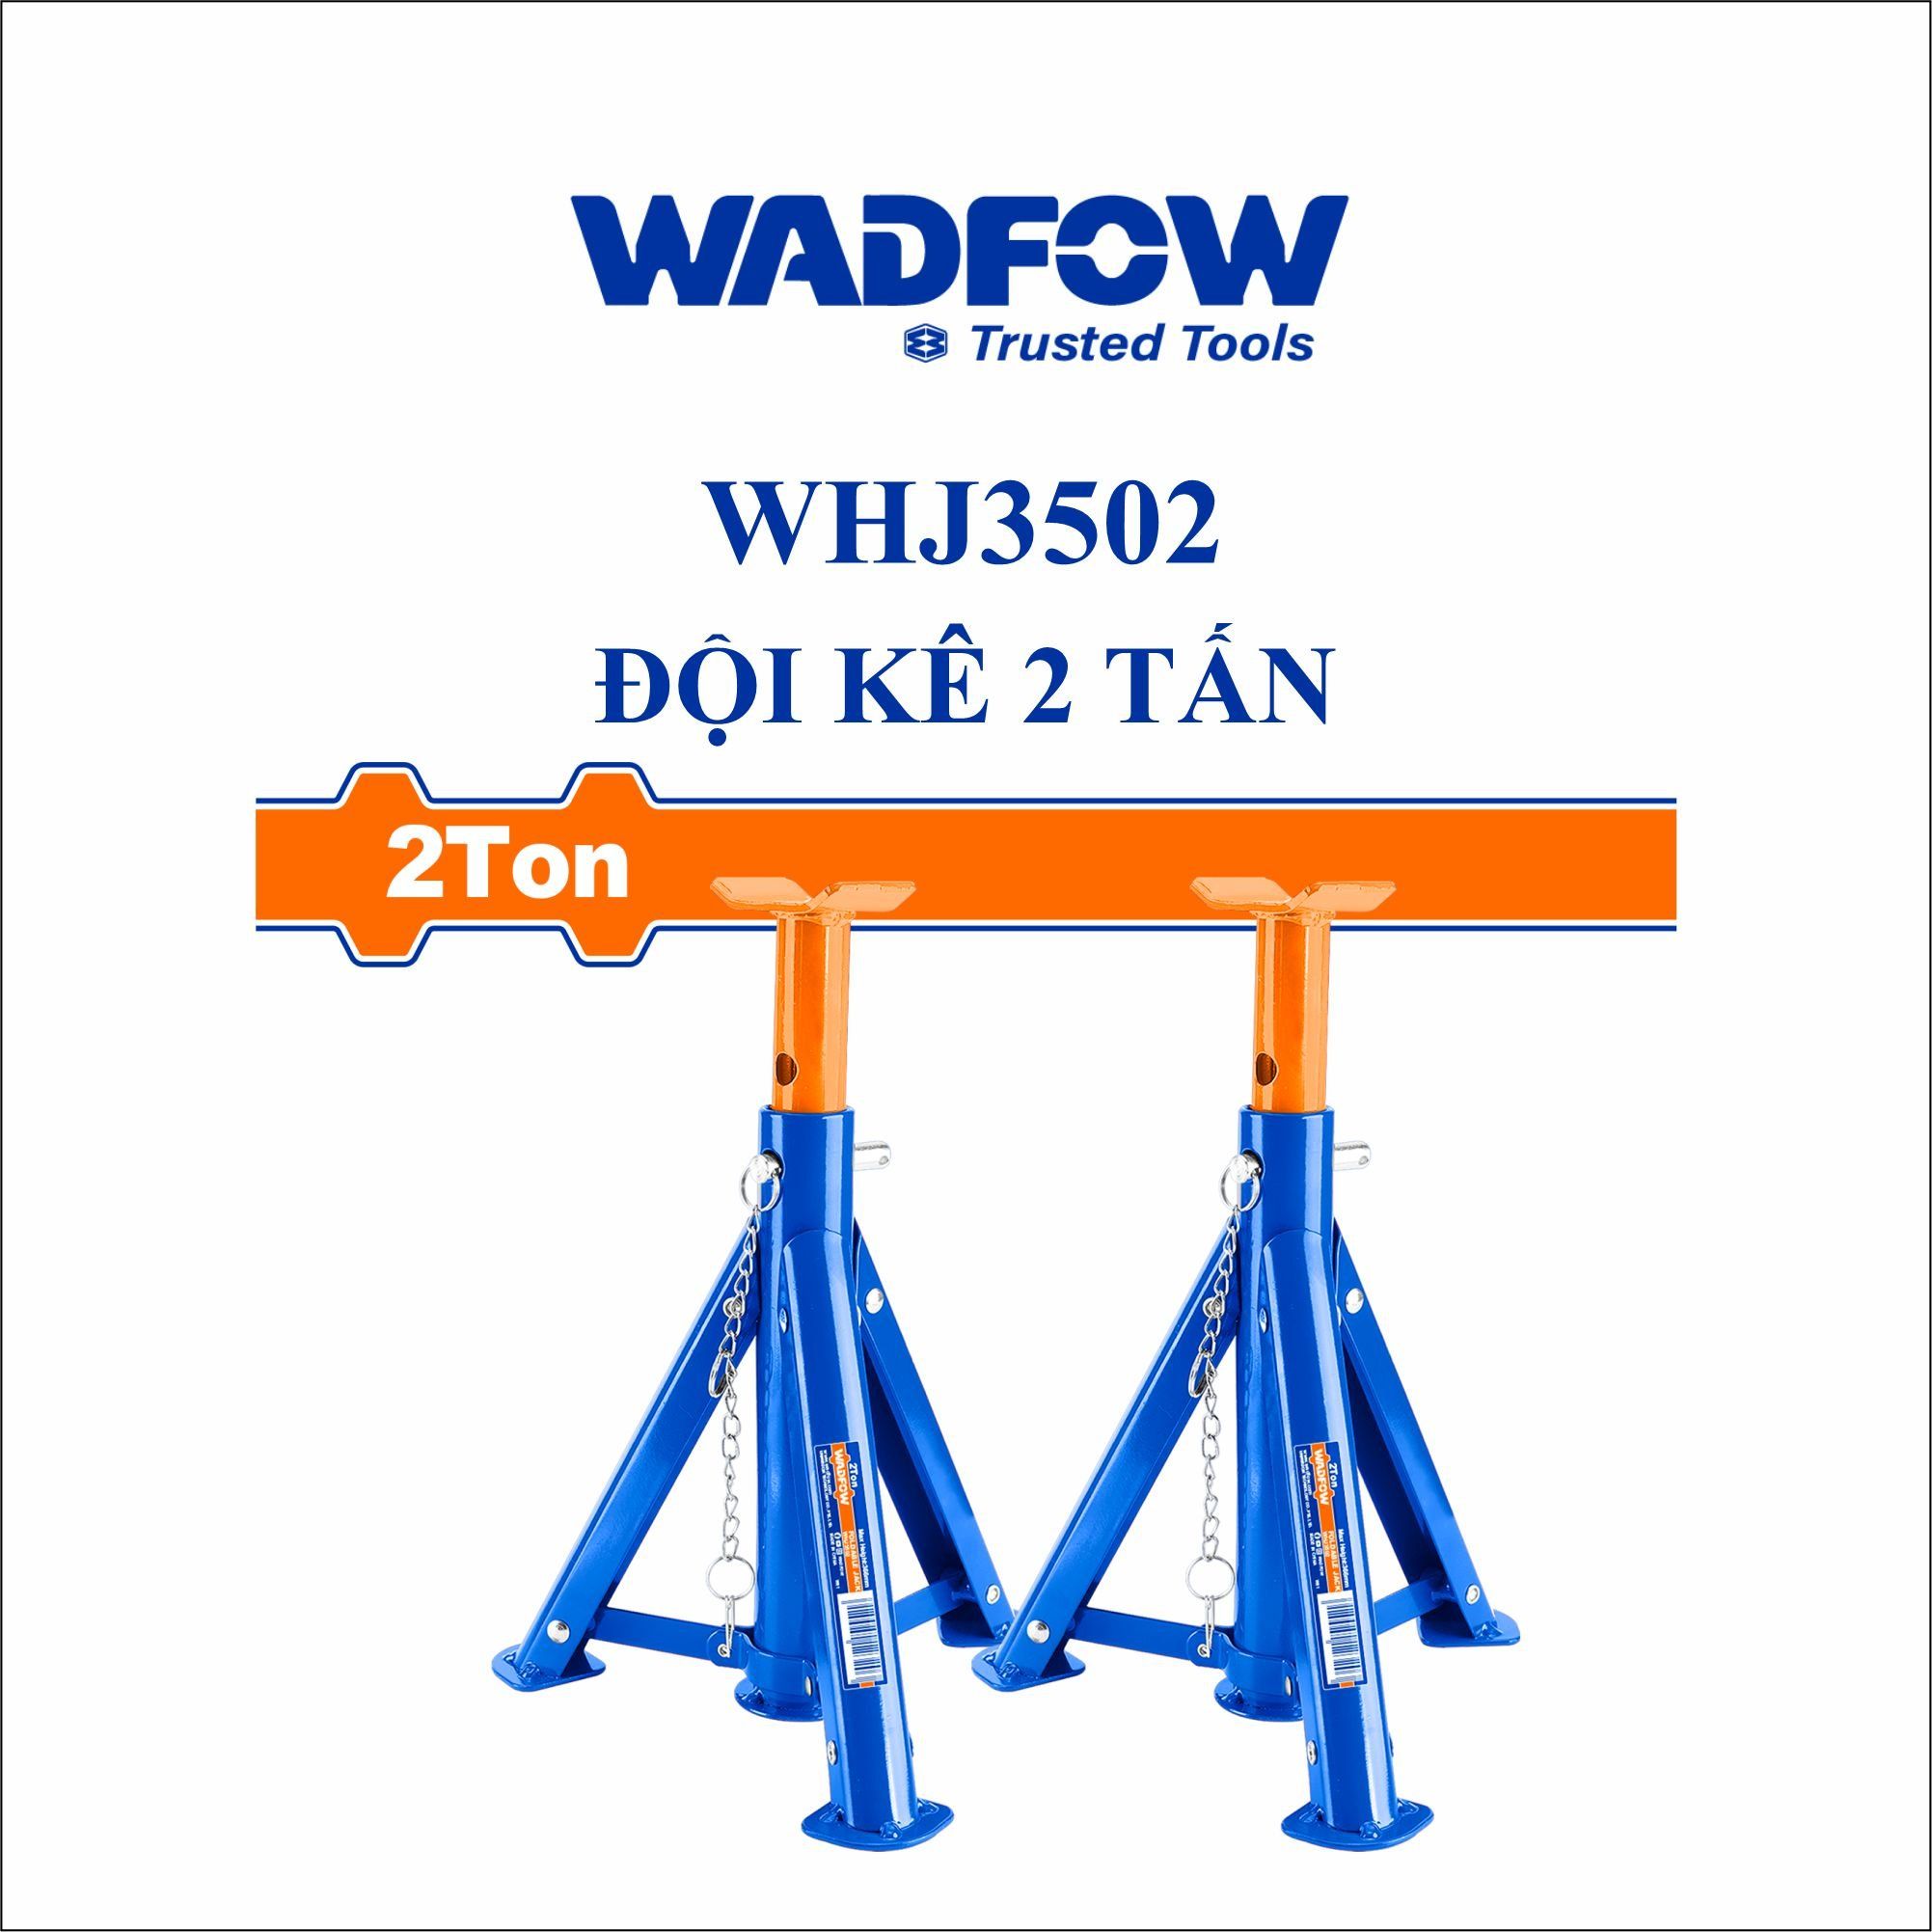  Đội kê 2 tấn WADFOW WHJ3502 